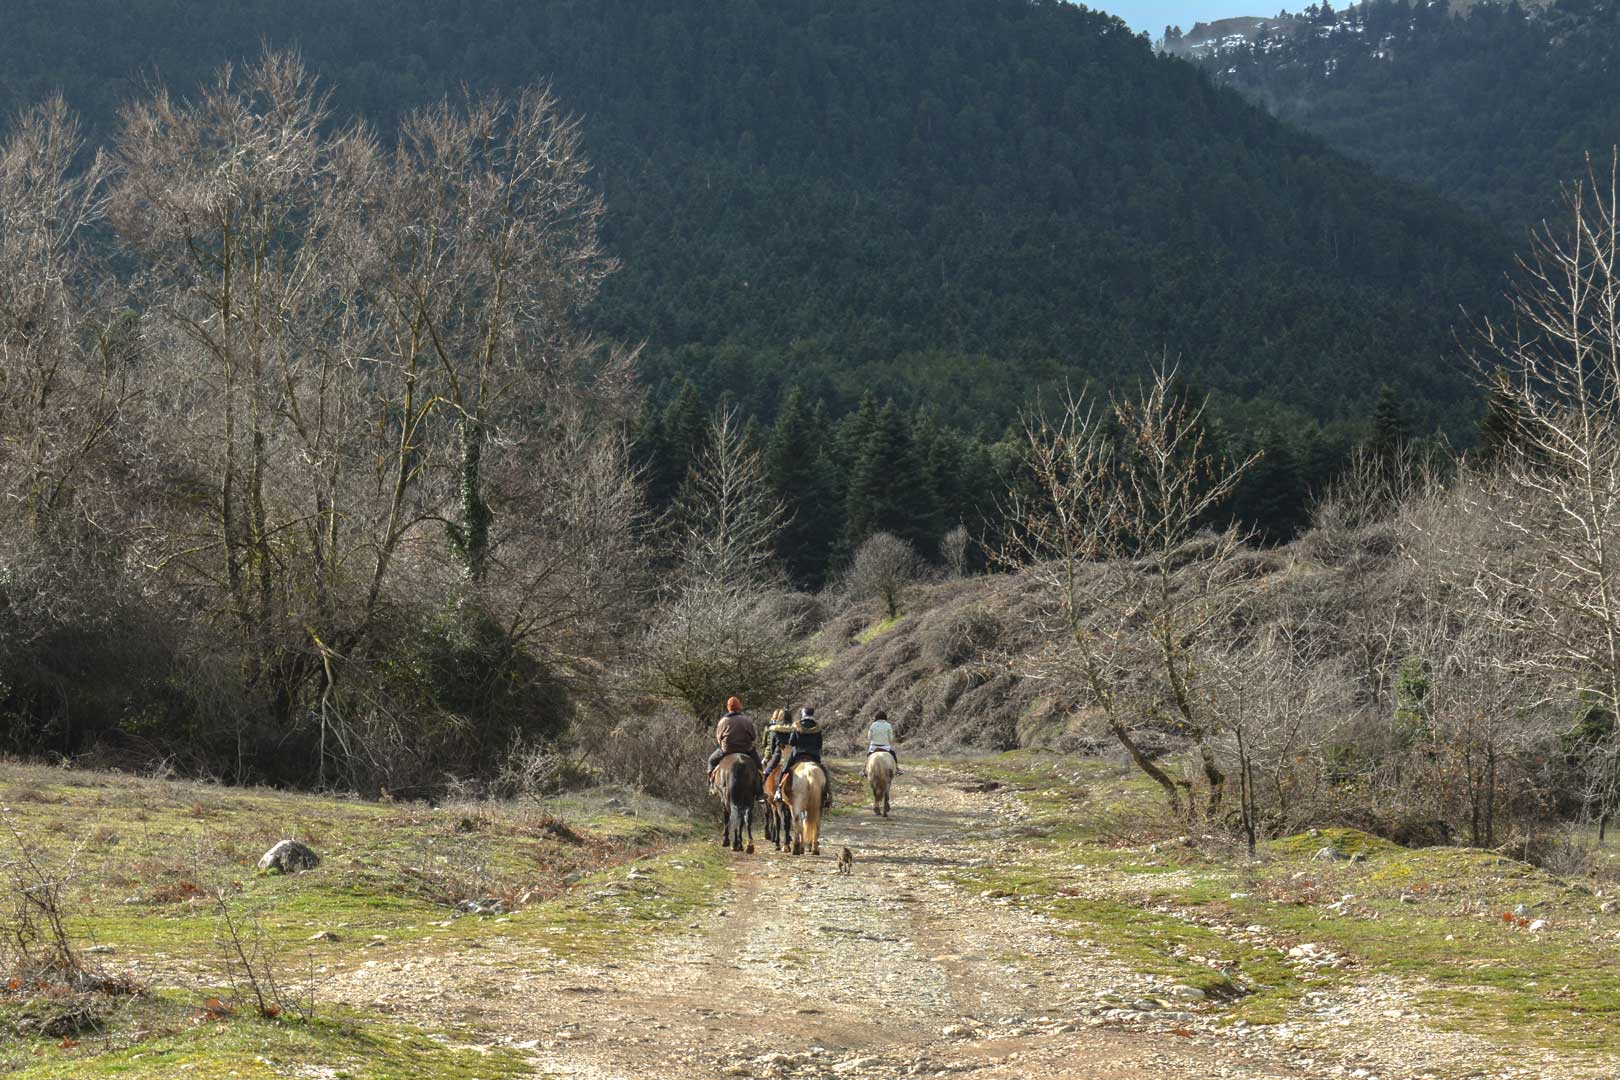  βόλτα με άλογα travelshare.gr